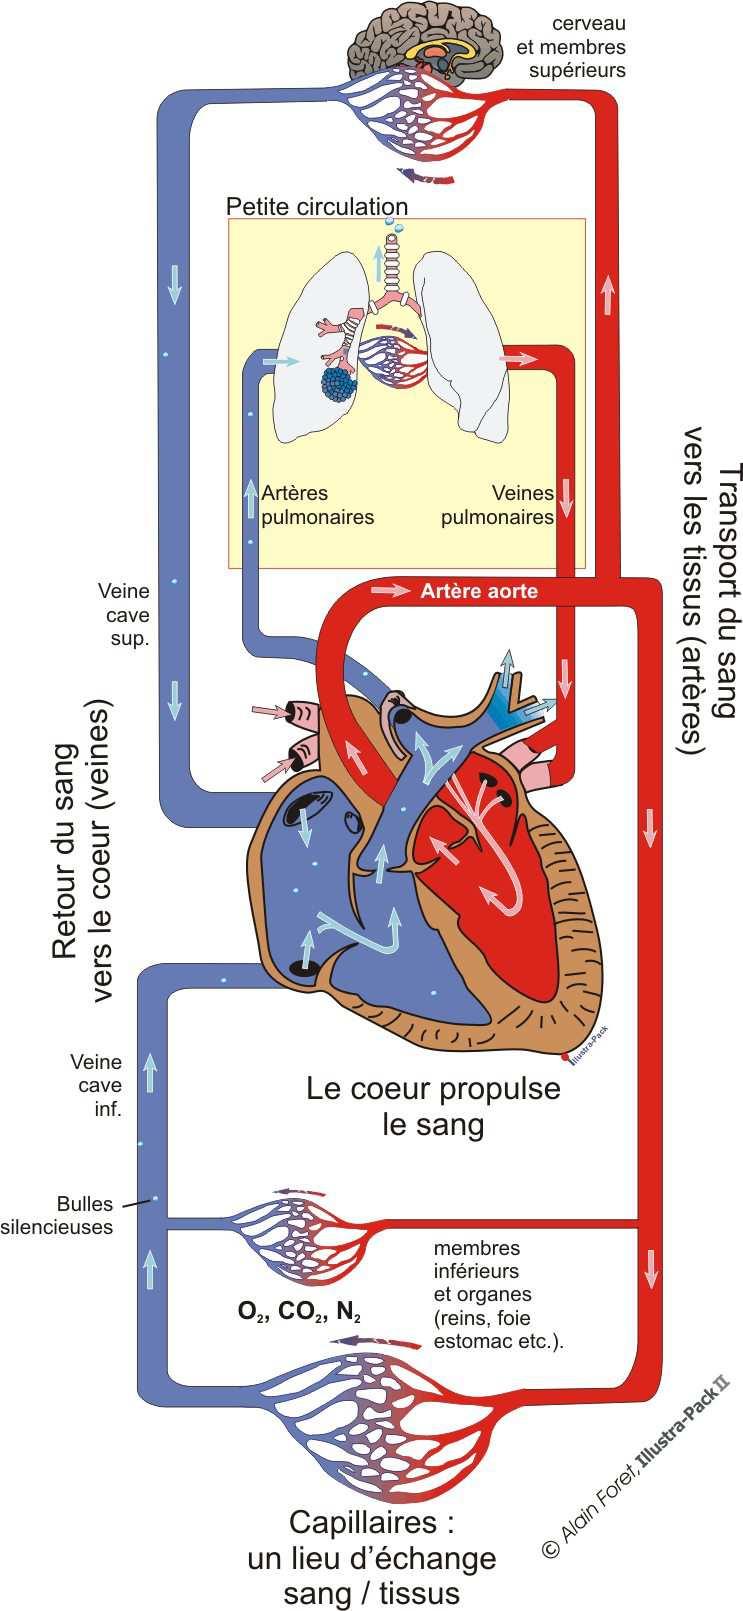 5.4 La grande circulation C est une boucle fermée entre le cœur et les tissus. C est le circuit d épuration et d oxygénation des tissus.